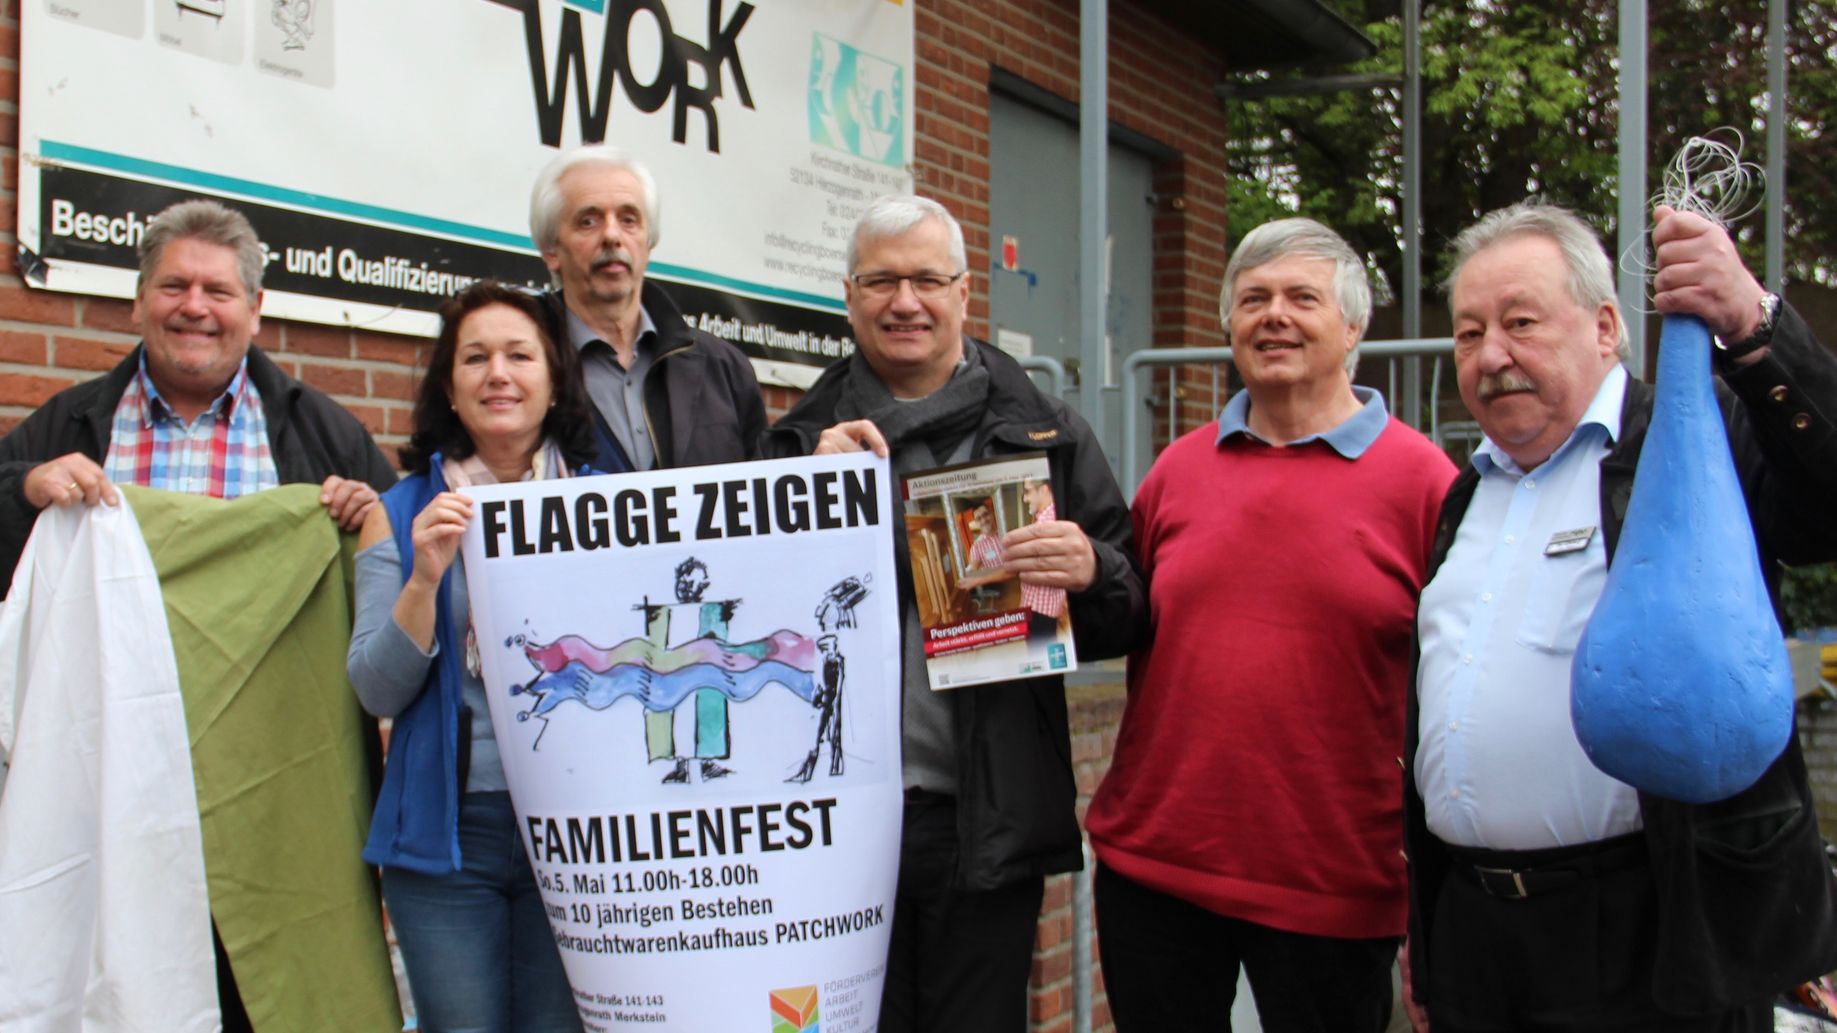 Gemeinsam mit Schirmherr Regionalvikar Hannokarl Weishaupt (Mitte) Flagge zeigen. (c) Andrea Thomas